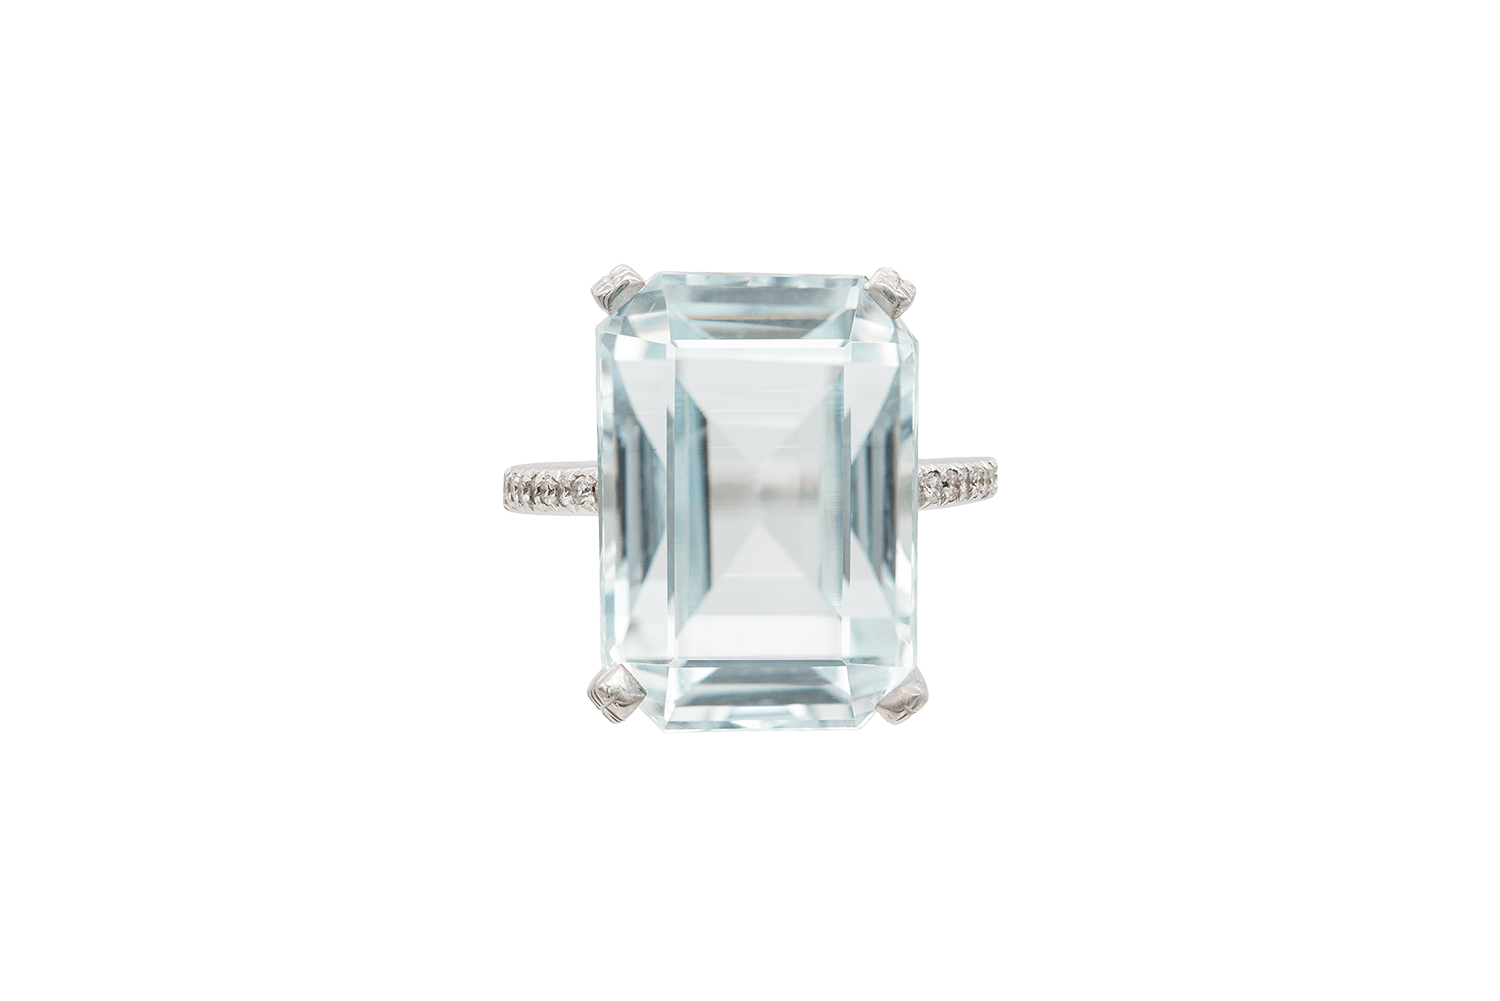 Aqua & Diamond Ring